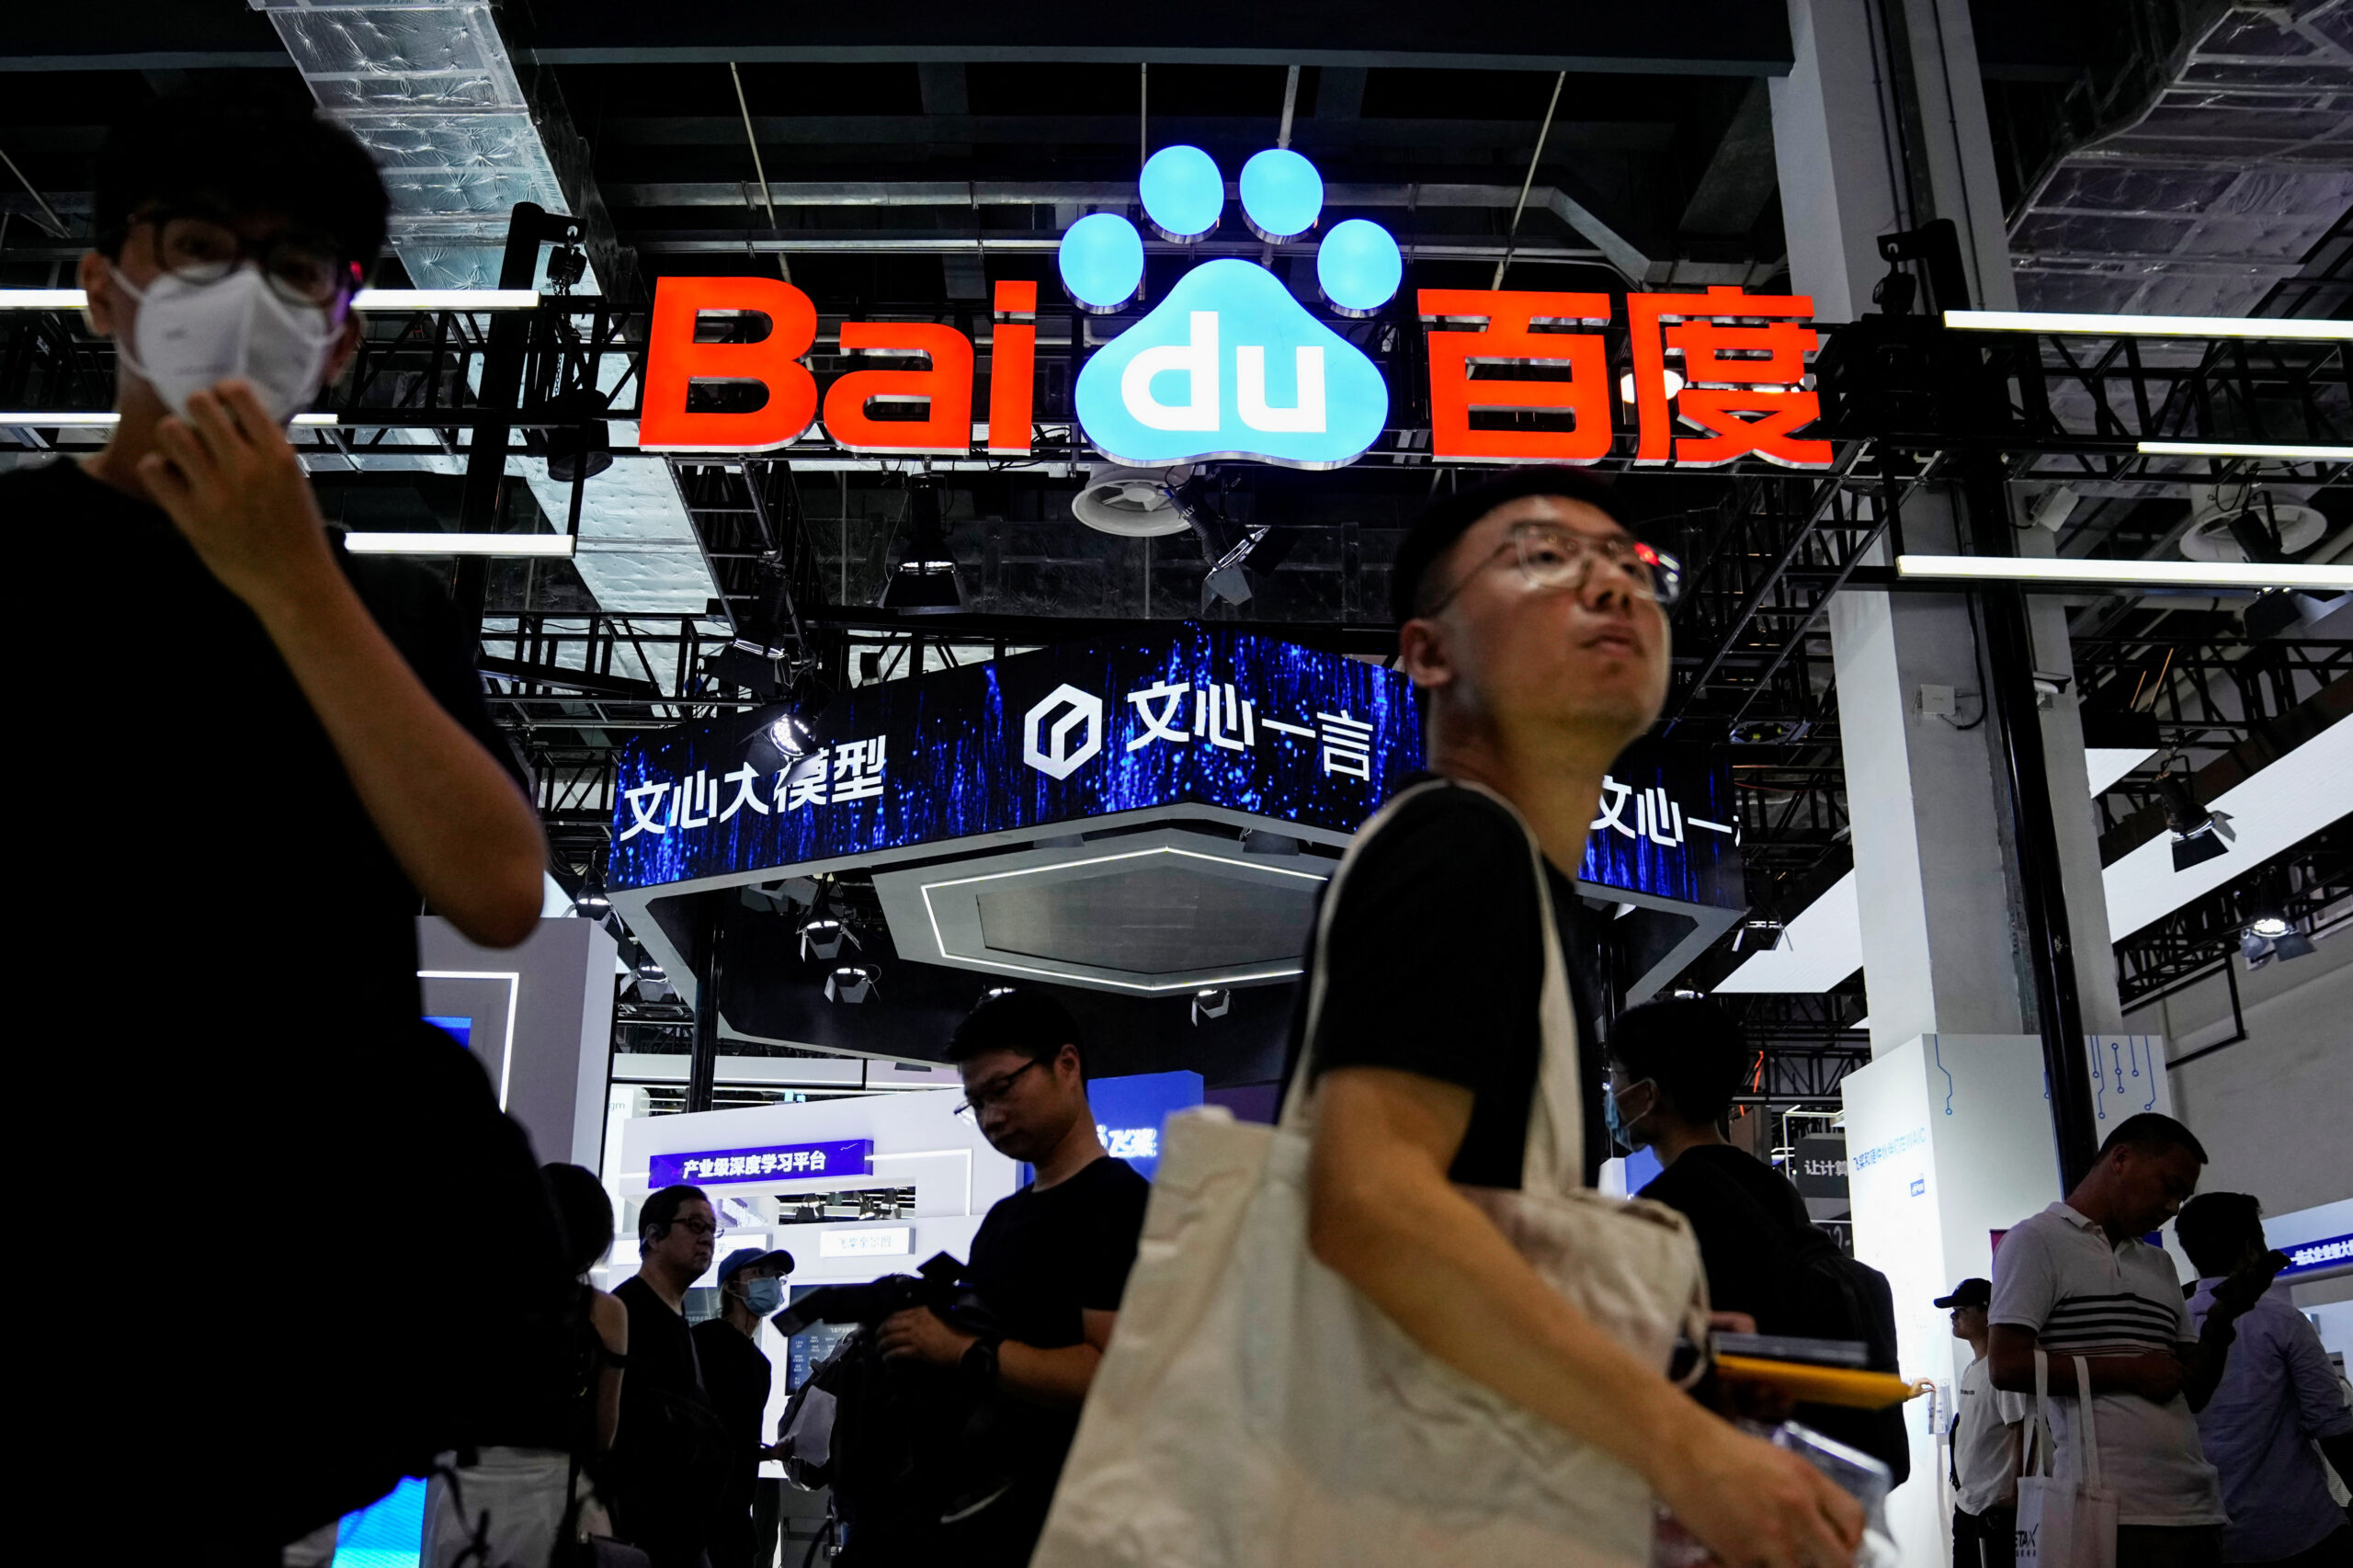 China deixa o Baidu, outros lançam bots semelhantes a chatgpt para público, ações de tecnologia